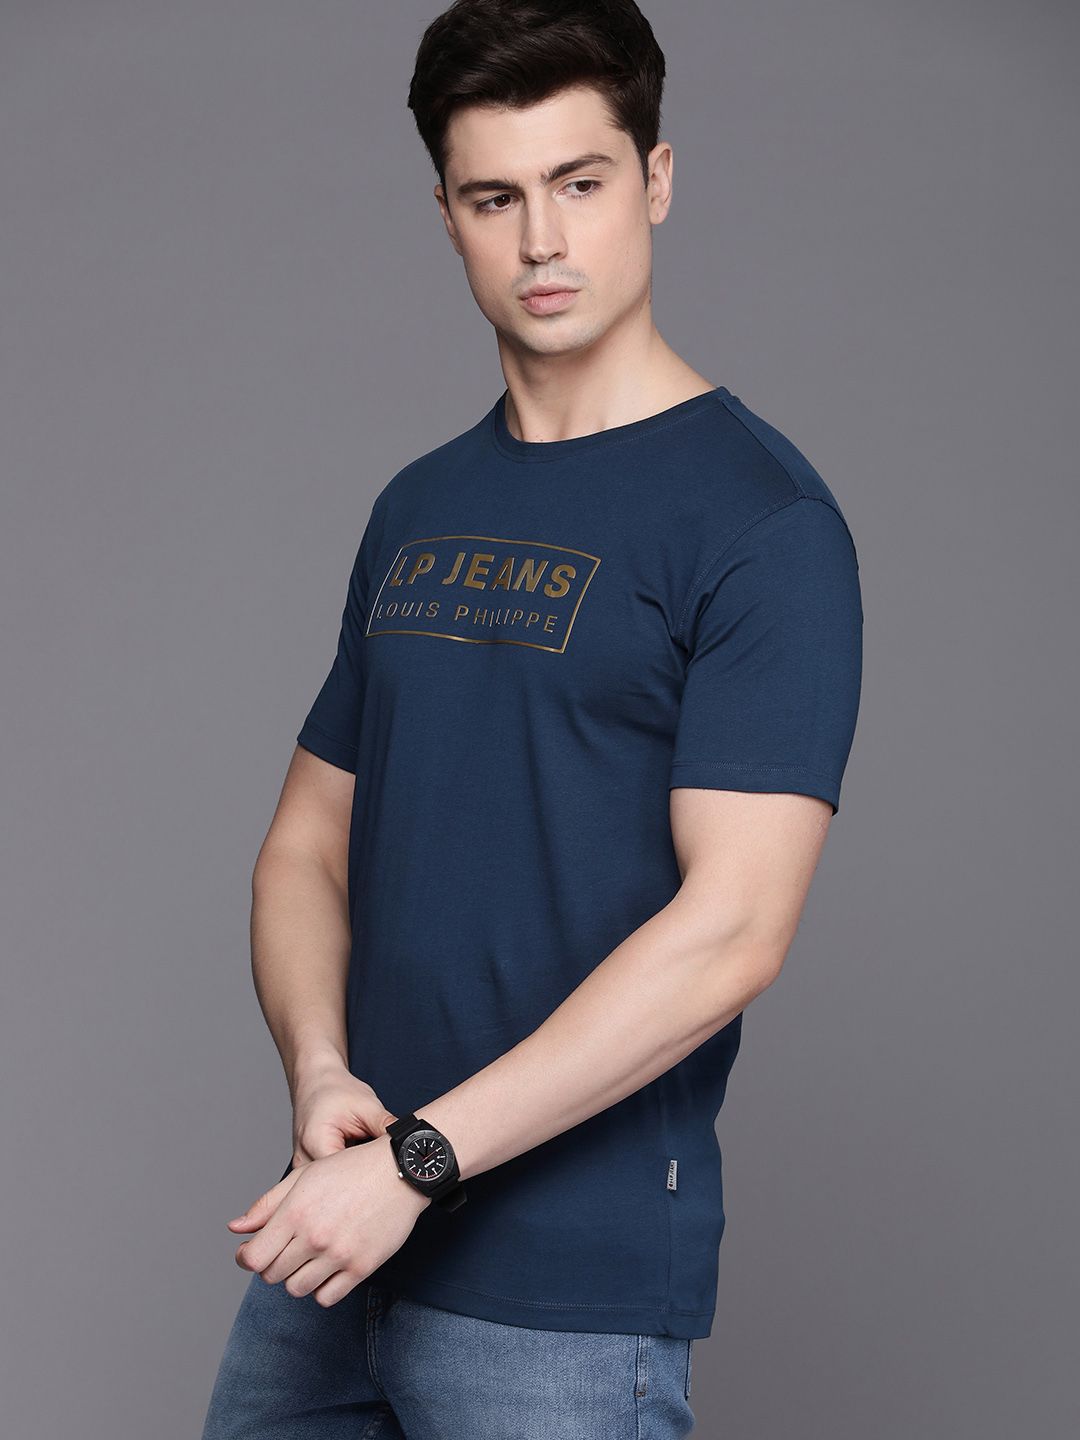 Louis Philippe Jeans Brand Logo Pure Cotton Applique Slim Fit T-shirt